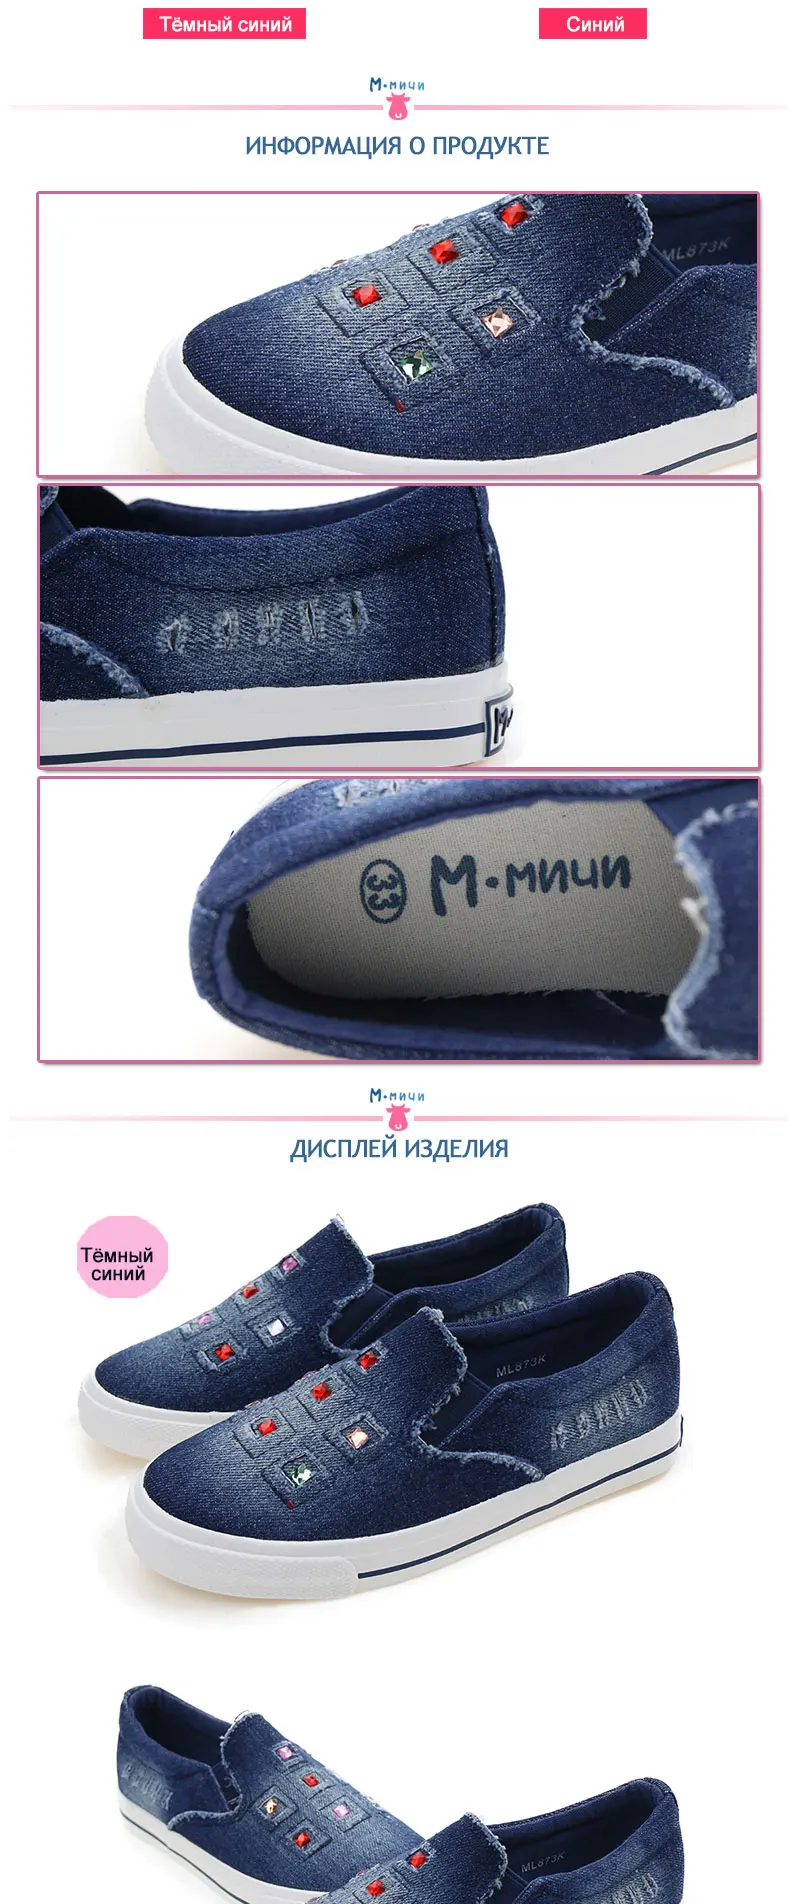 MMnun Москва склад обувь Для детей обувь для девочек ортопедические детские для девочек Джинсовая обувь Дети Детская обувь Размеры 31-36 873 К